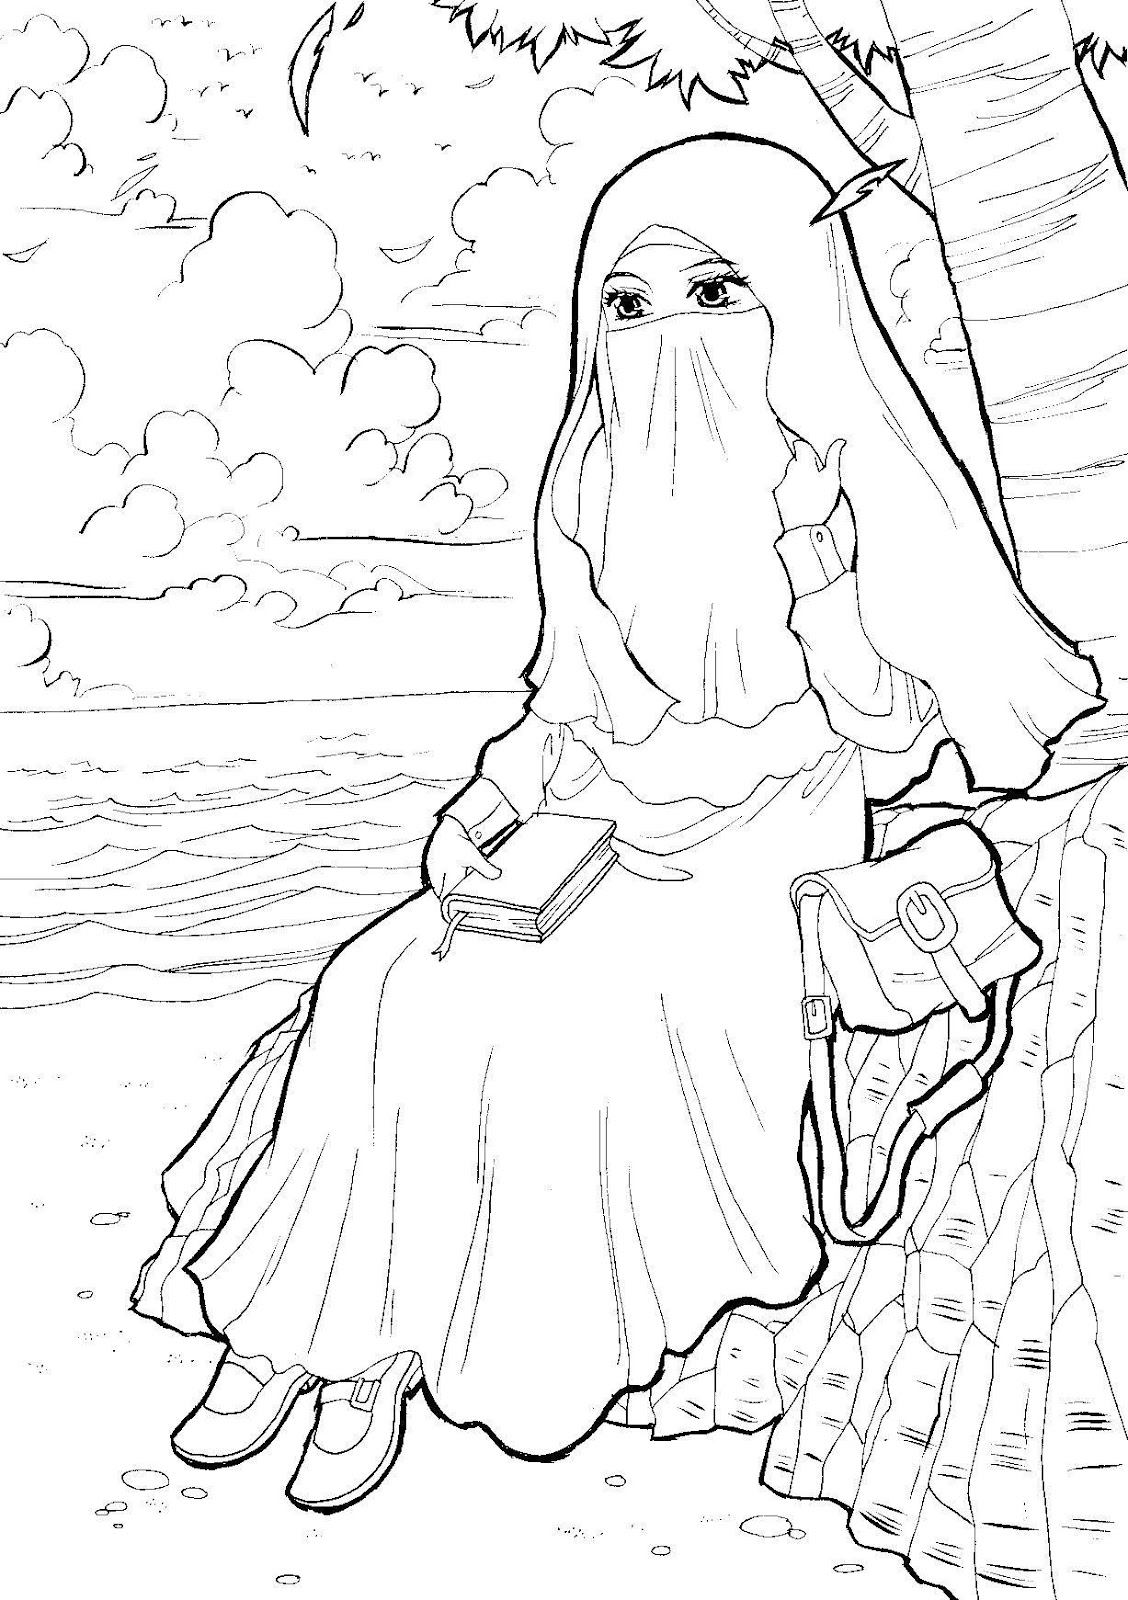 Mewarna Gambar Kartun Muslimah Comel 18 Contoh Mewarnai Gambar Kartun 